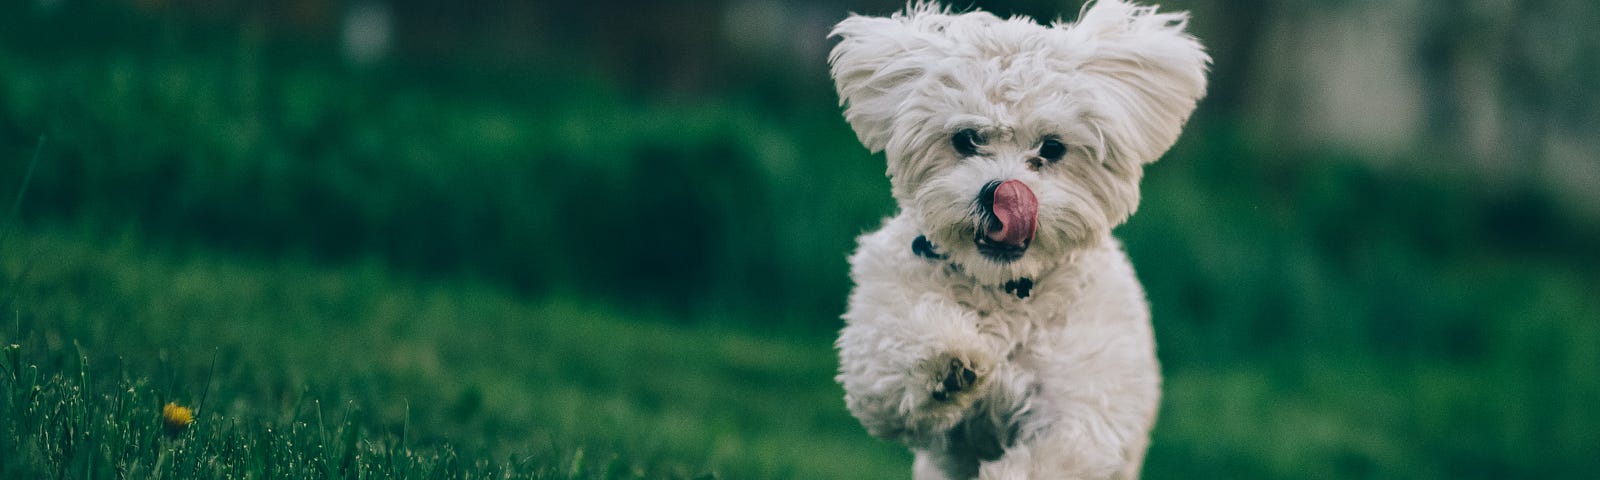 A cute white pup runs across the yard.